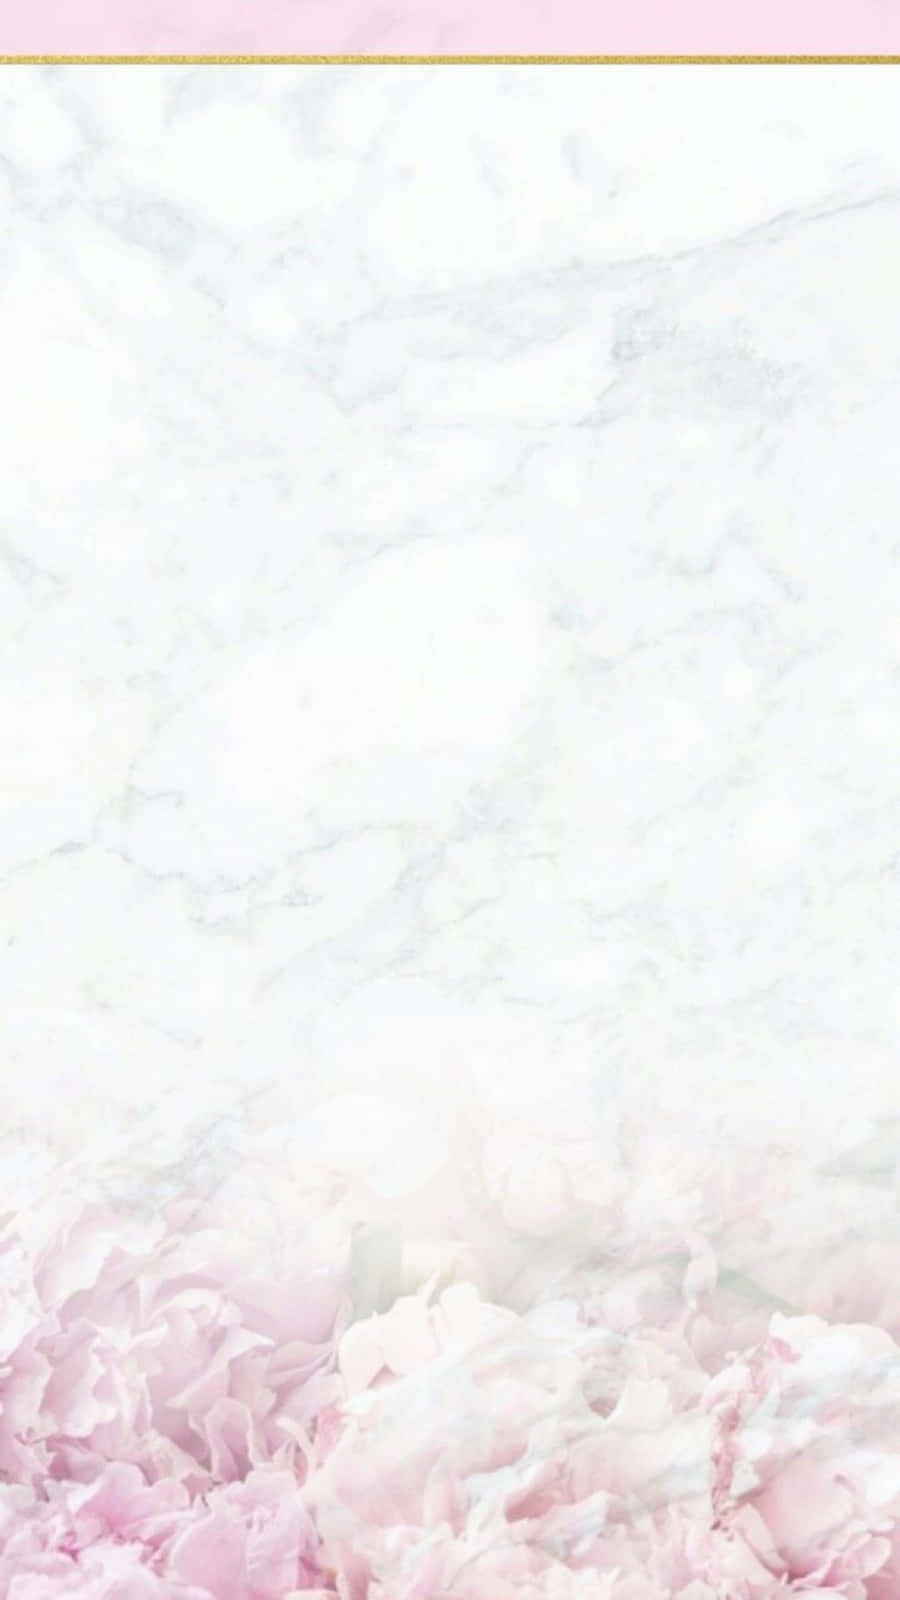 Einästhetisches Bild In Pink Und Weiß. Wallpaper